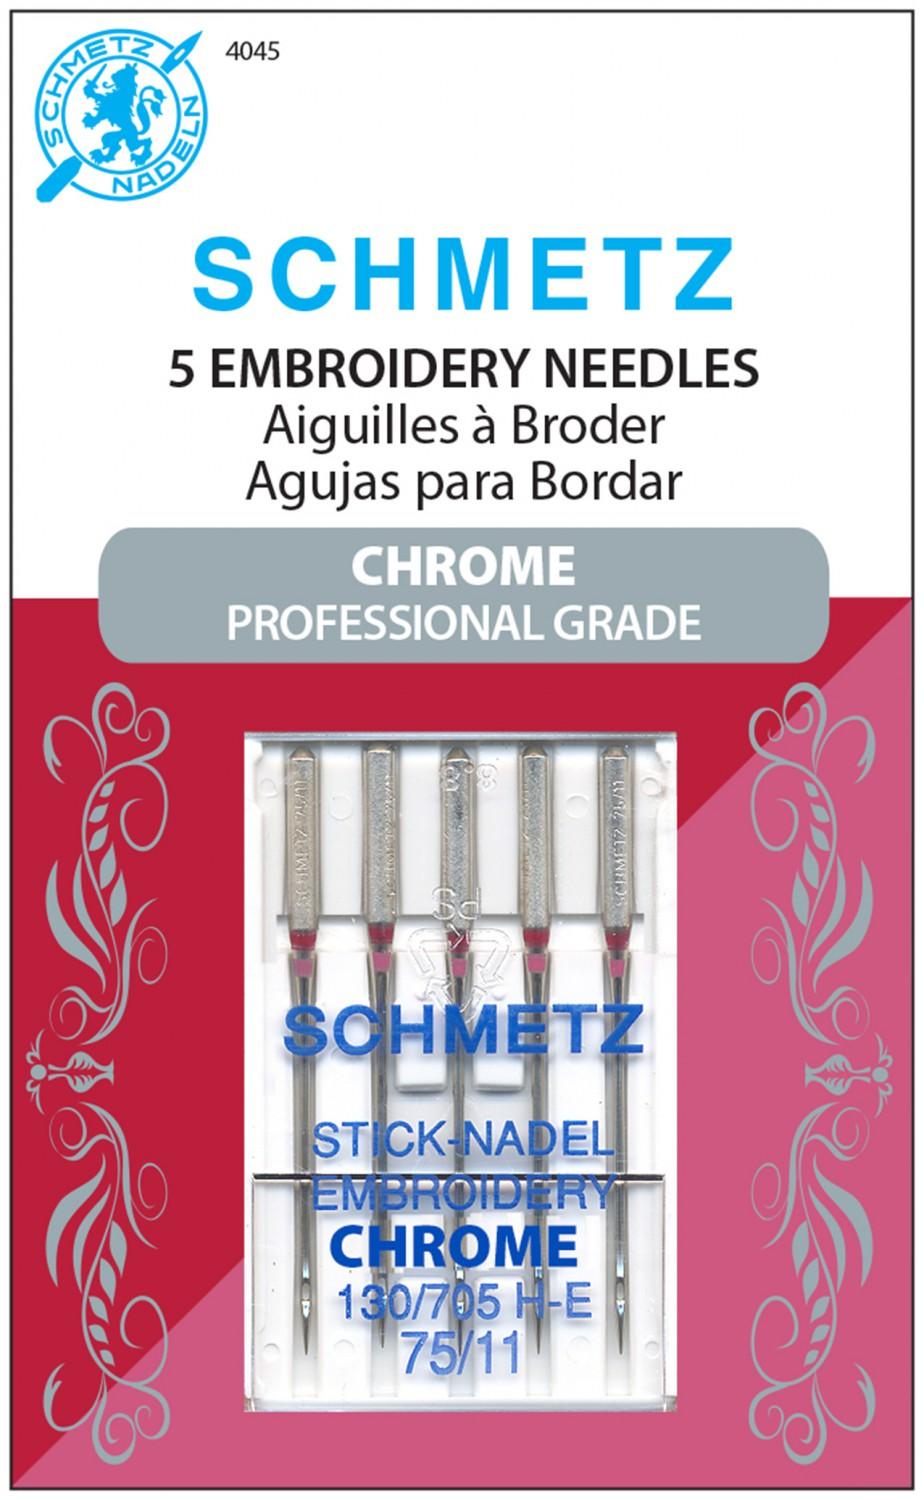 Chrome Embroidery Schmetz Needle 5 ct, Size 75/11 # 4045